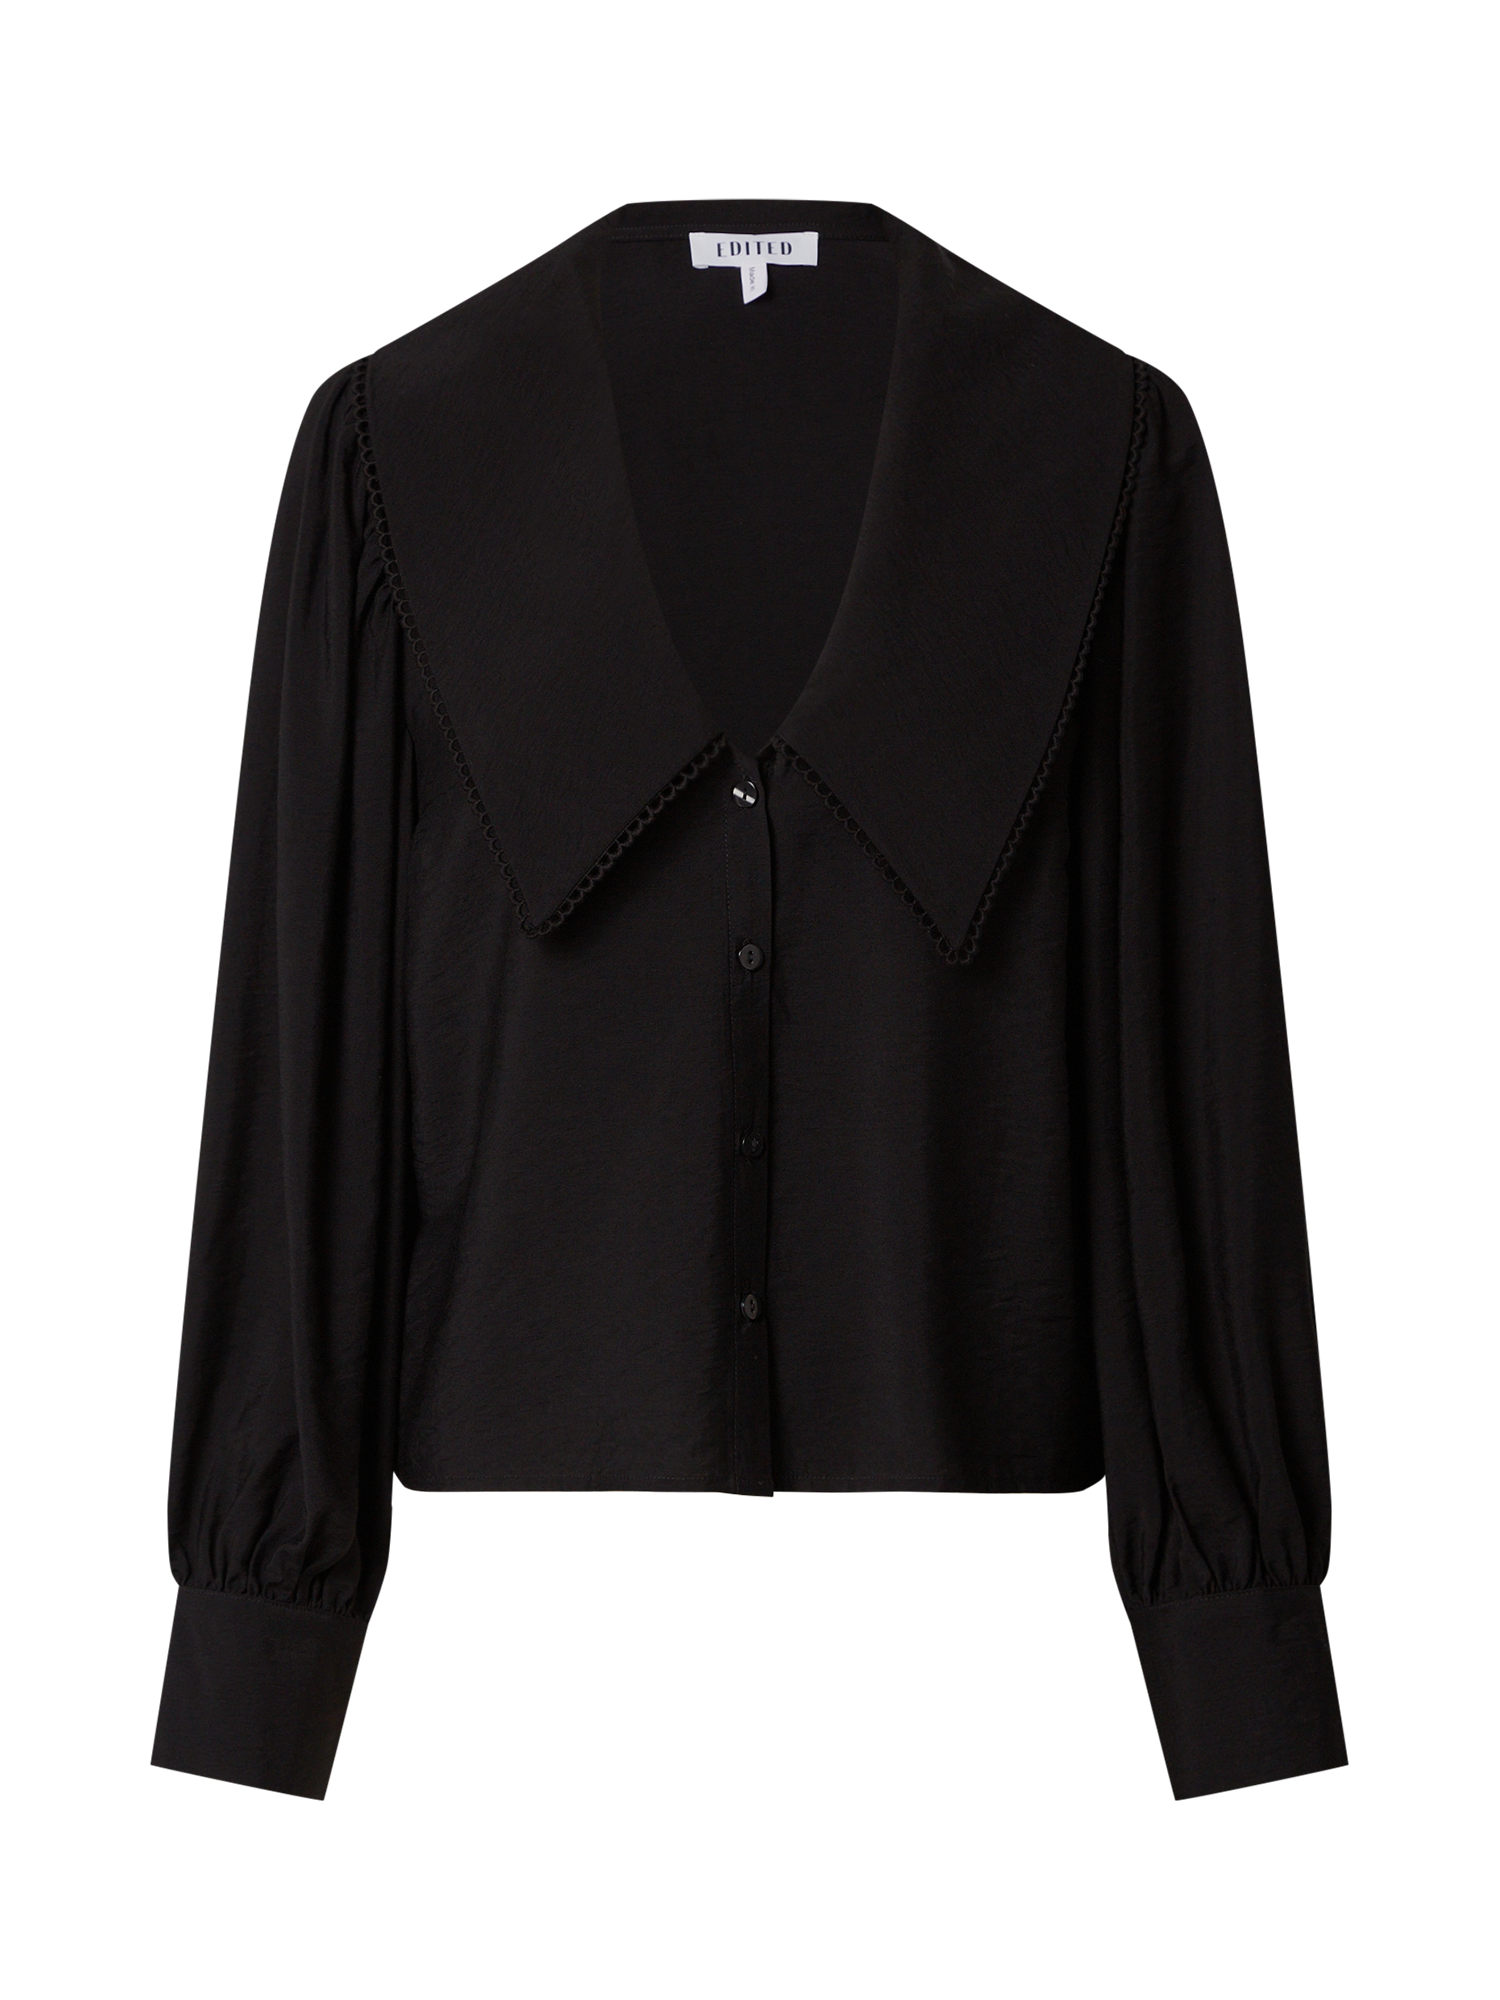 Odzież Kobiety EDITED Bluzka Mariel w kolorze Czarnym 